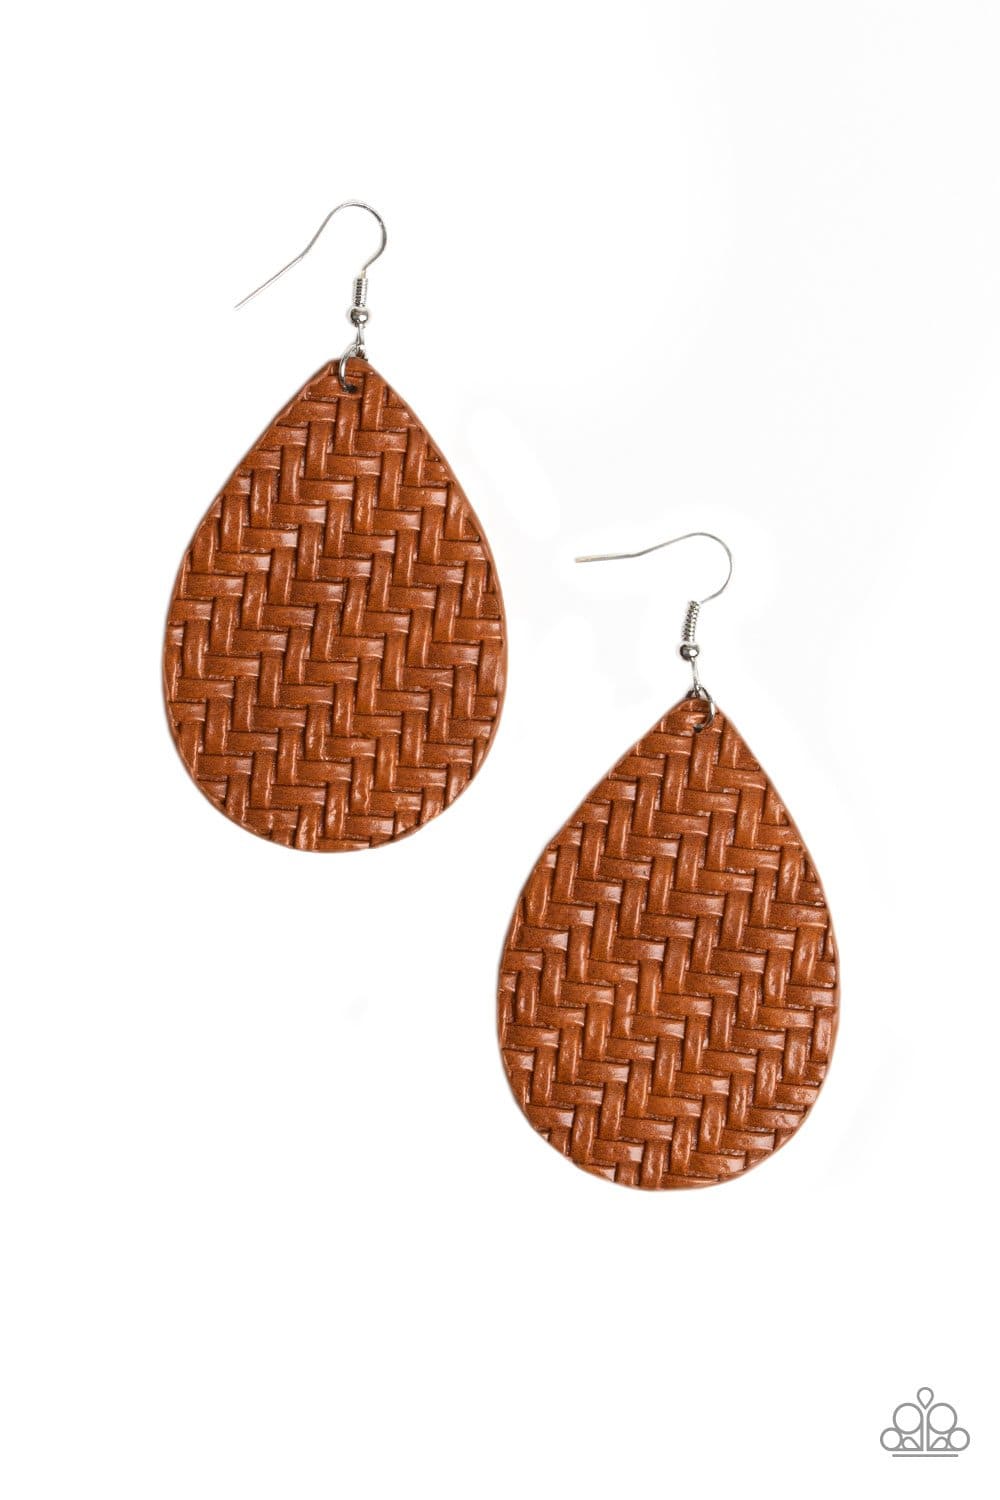 Teardrop Trend - Brown Leather Teardrop Earrings - Paparazzi Accessories - GlaMarous Titi Jewels